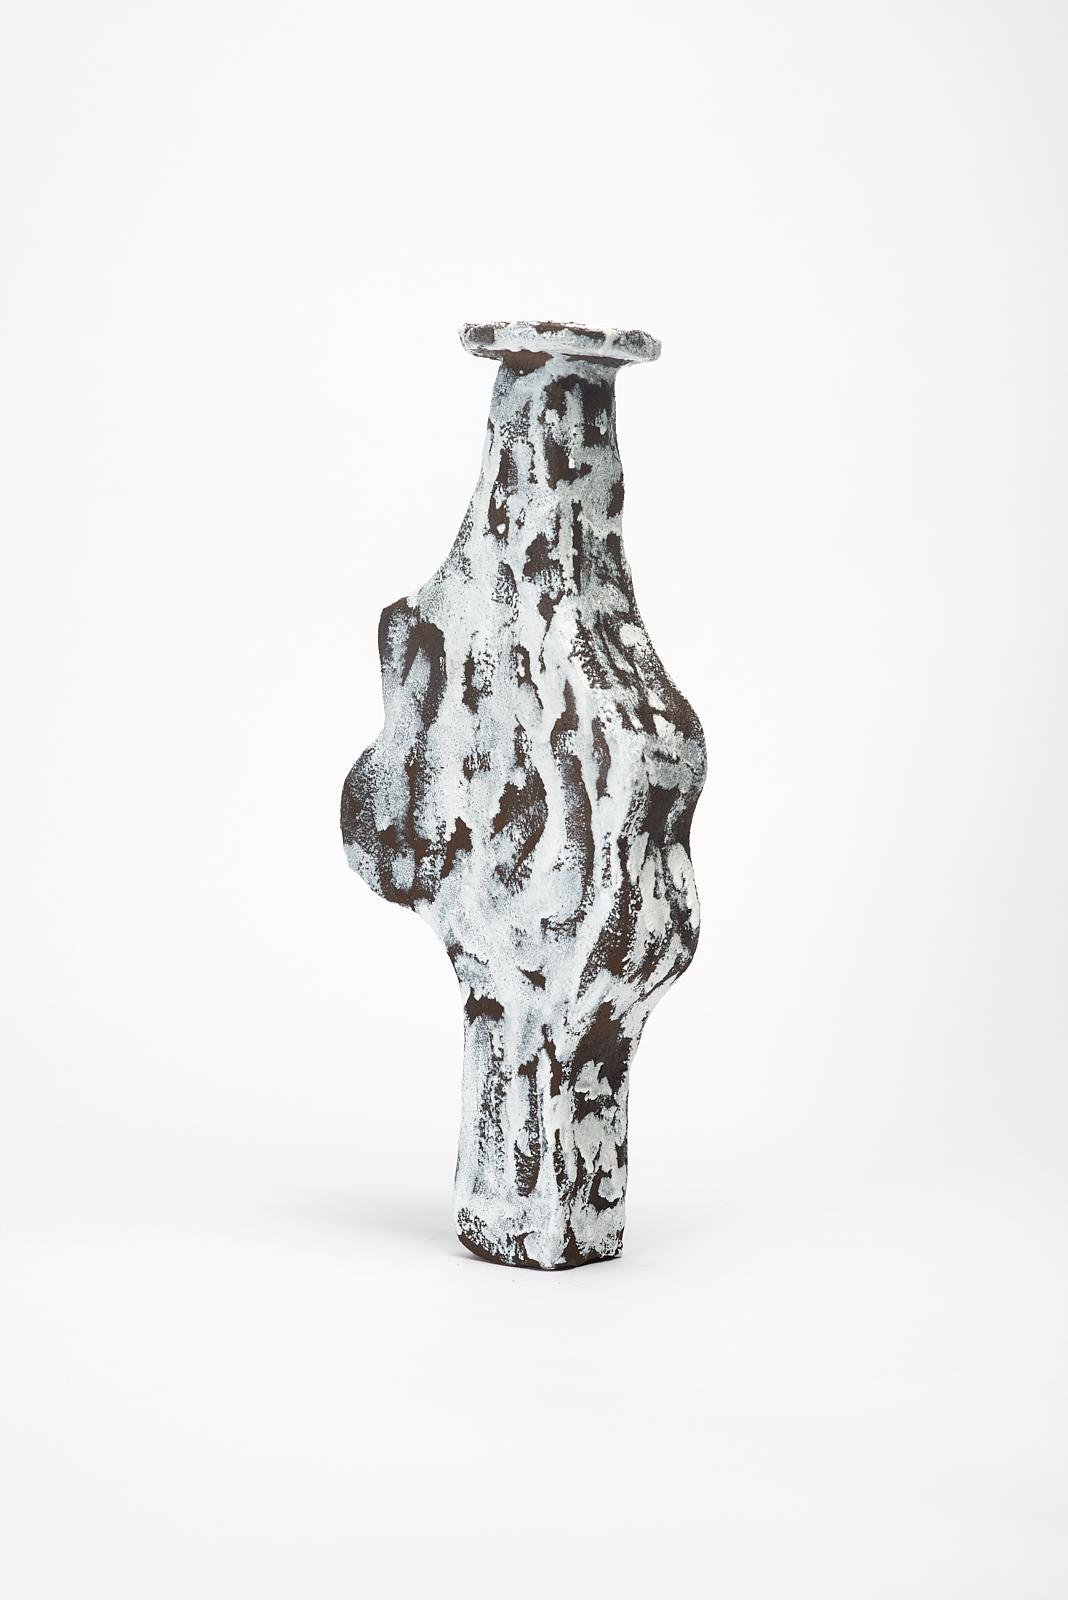 Dutch Geta Vase by Willem Van hooff